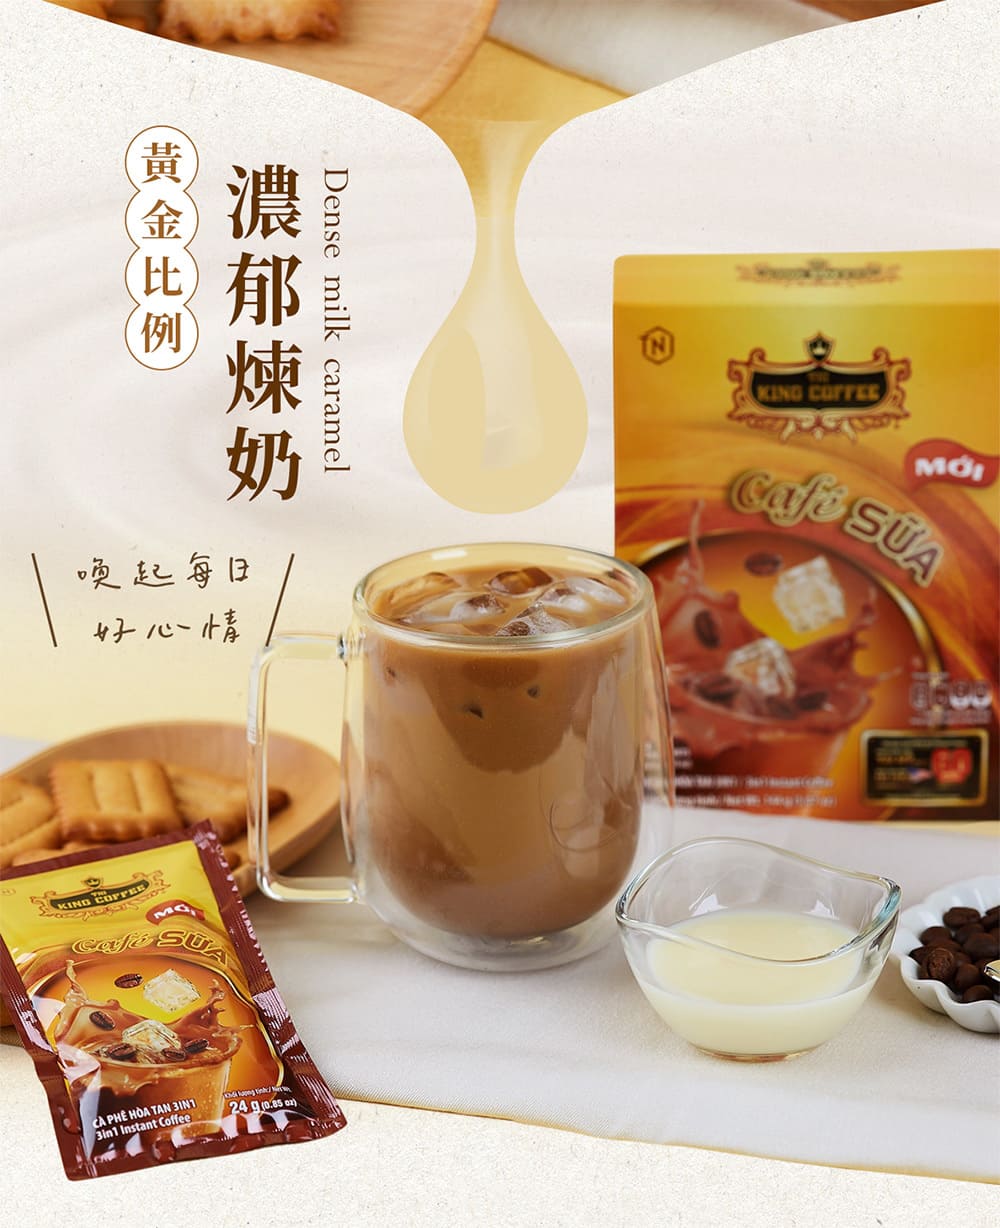 王者咖啡 添愛尊尚三合一滴滴煉奶咖啡 10入/盒(24gx1